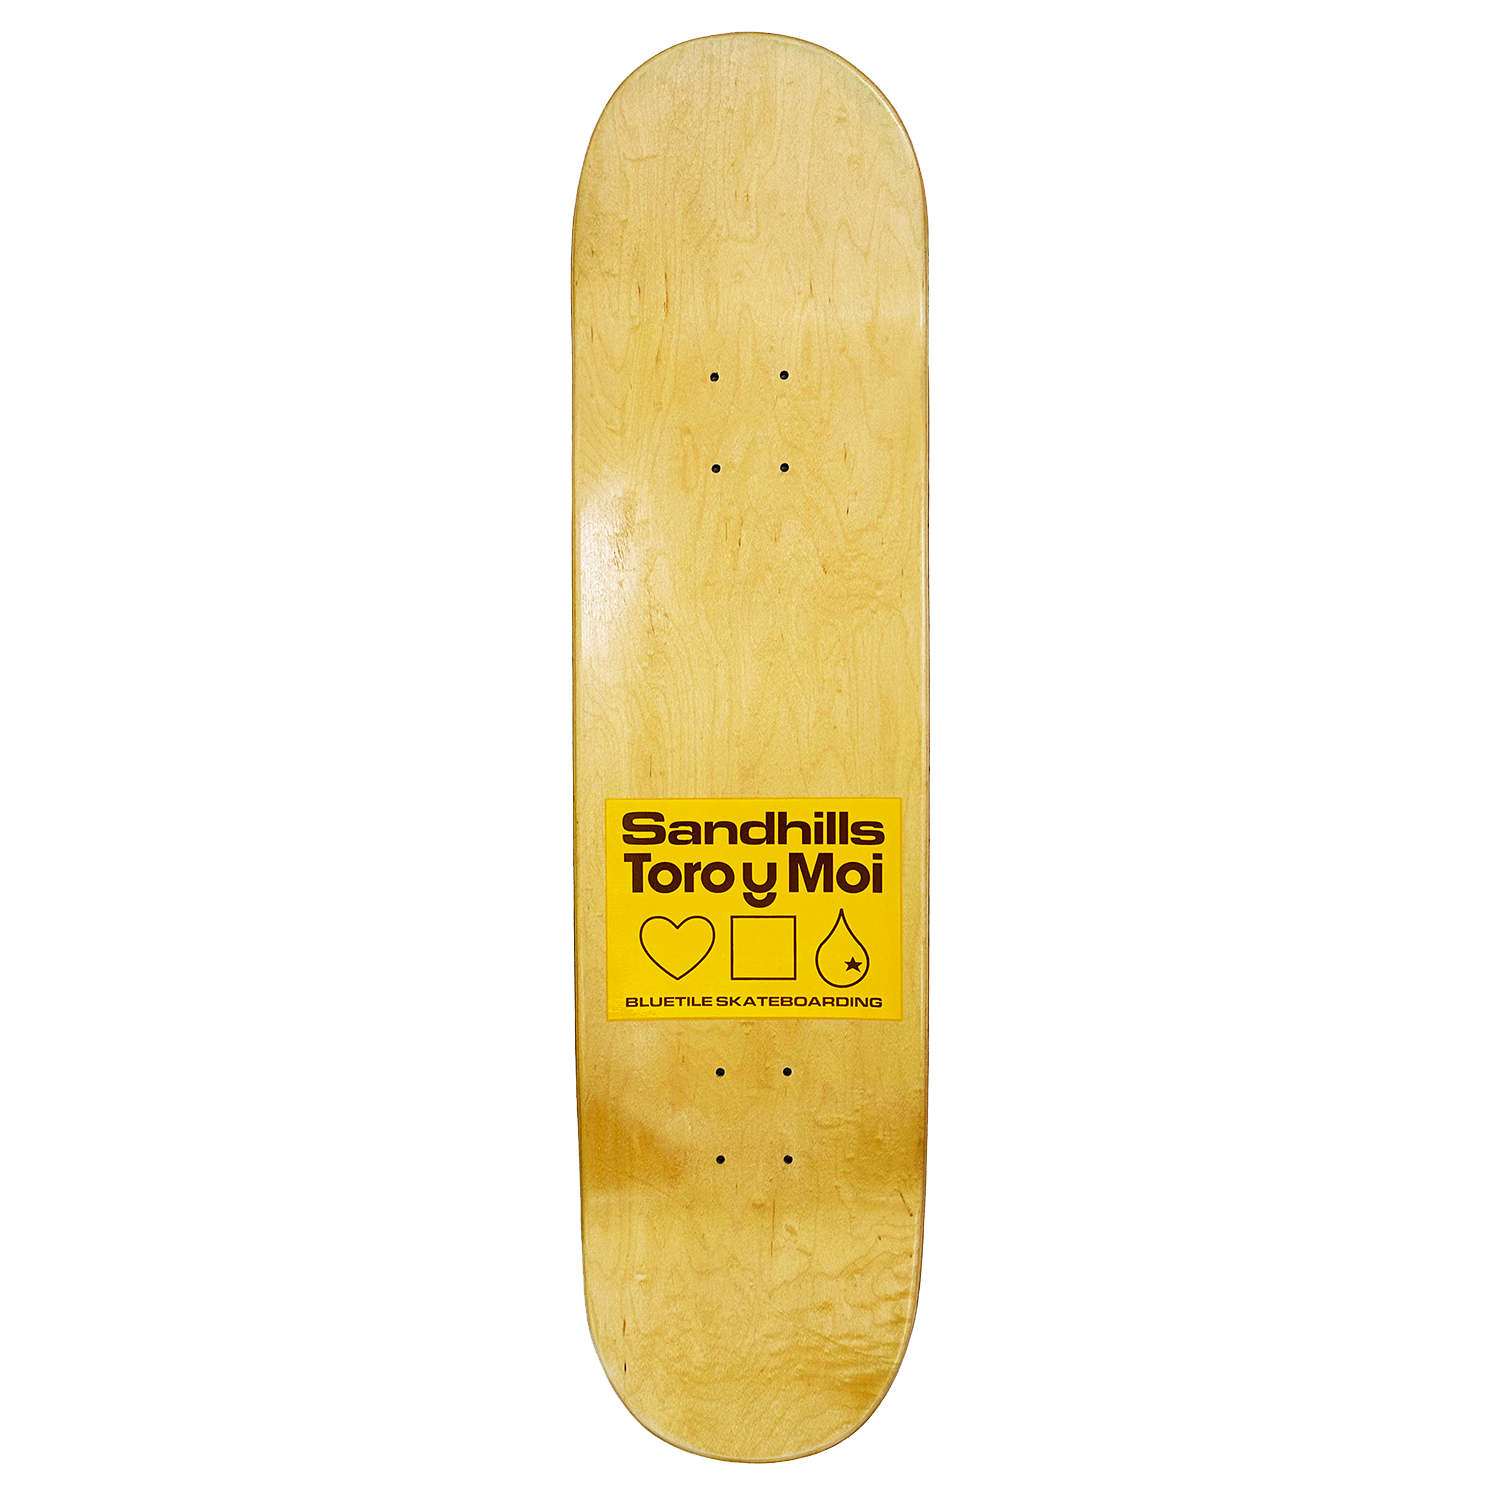 Toro y Moi x Bluetile Skateboarding - Sandhills Skate Deck - 8.75”